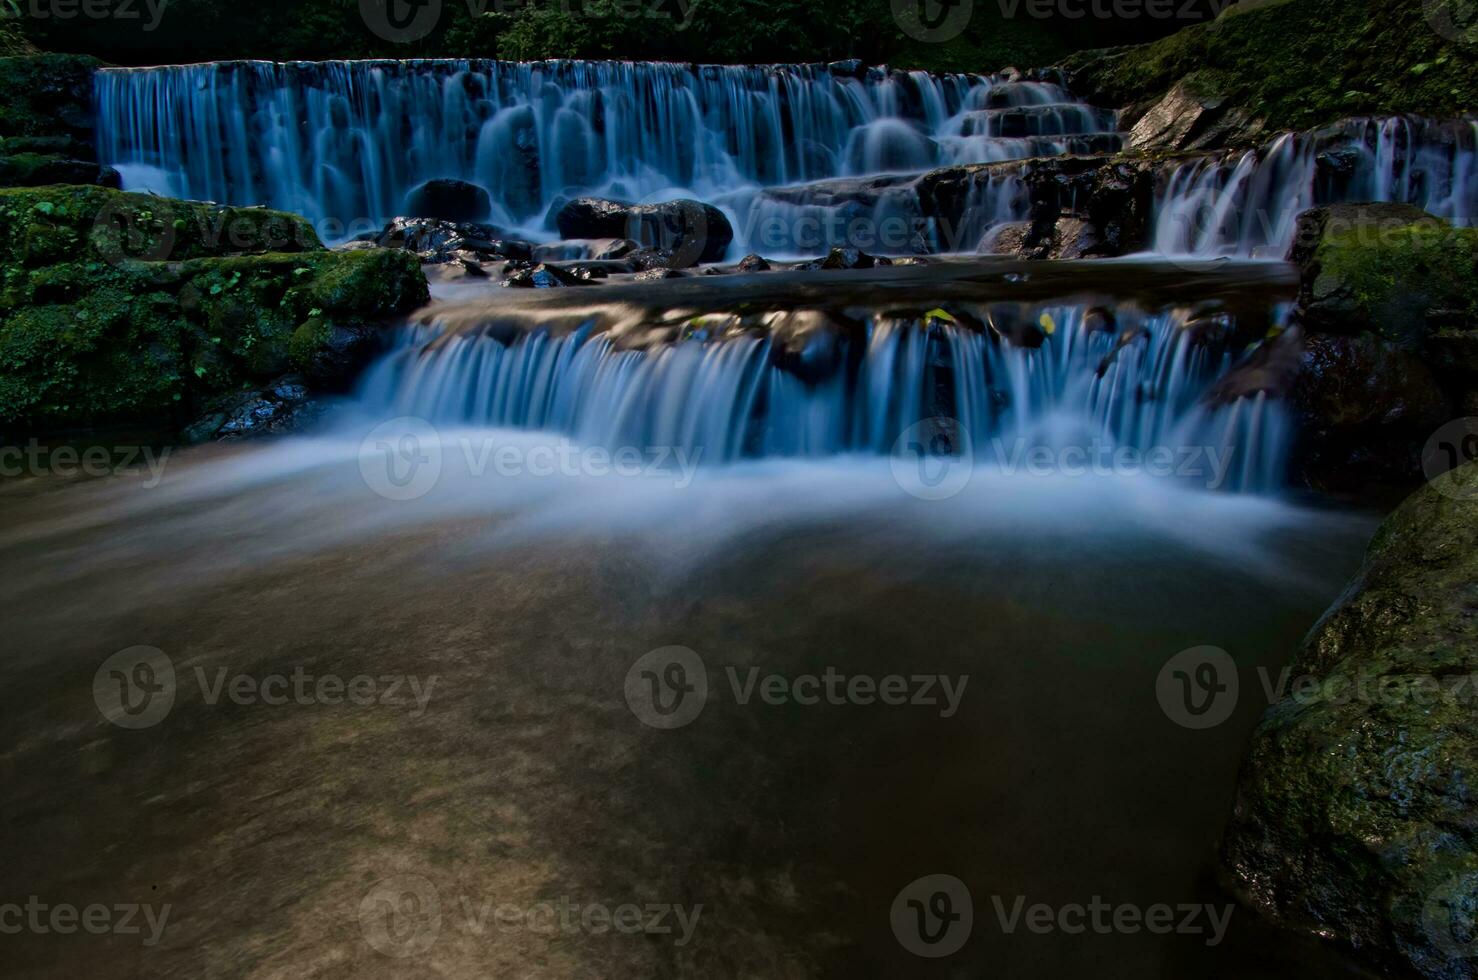 schön Aussicht von Wasserfall, Wasser fließen im Fluss mit Wasserfall Aussicht foto